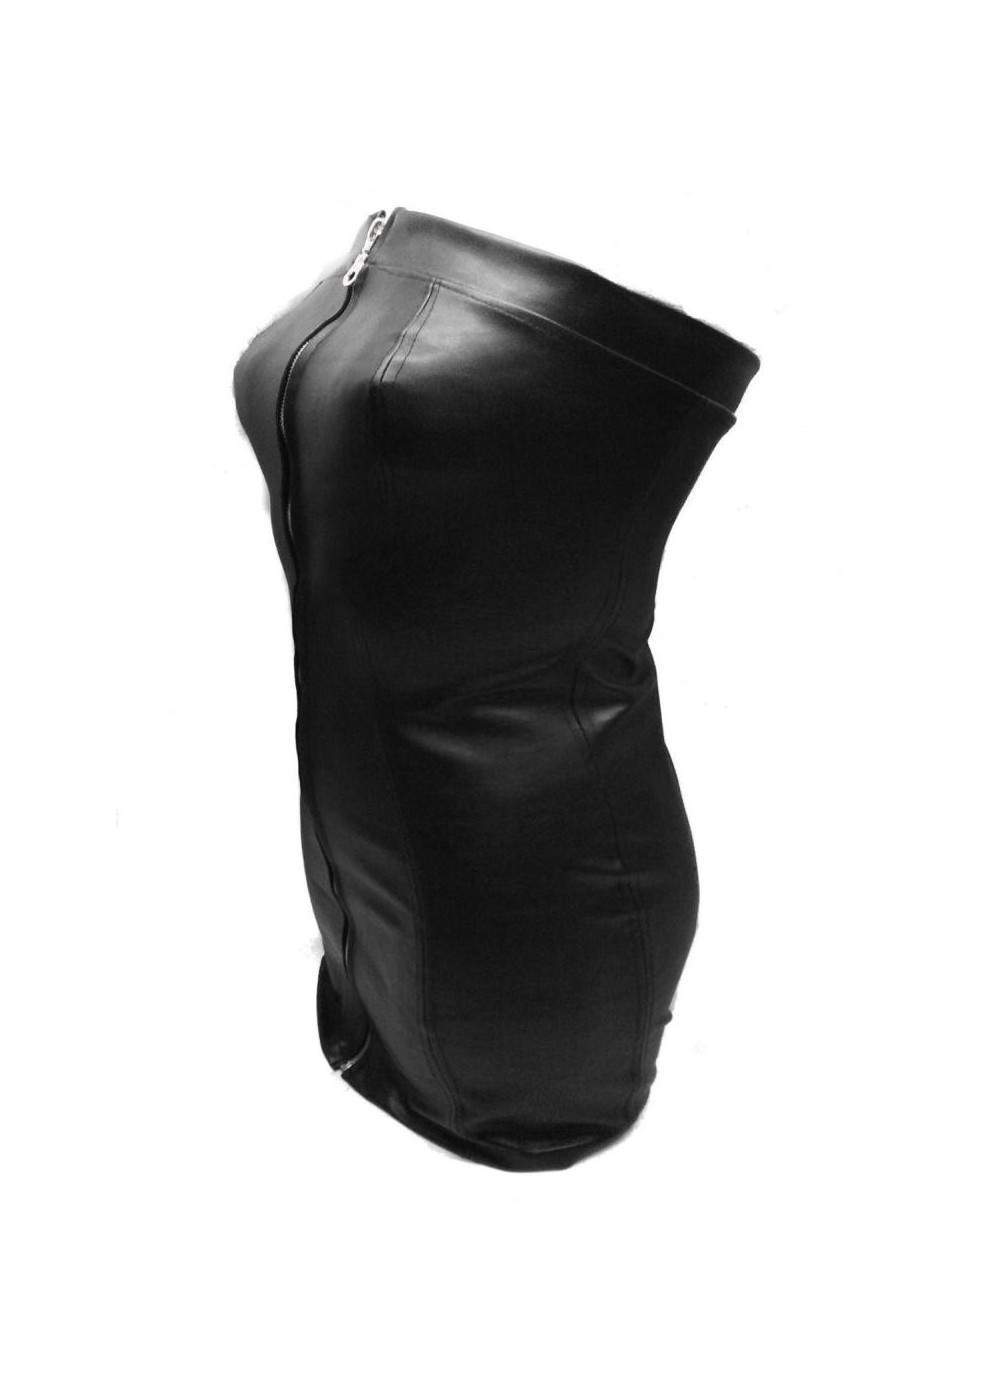 Kauf auf Rechnung Designer Leder Kleid schwarz Größe L - XXL (44 - ... - 